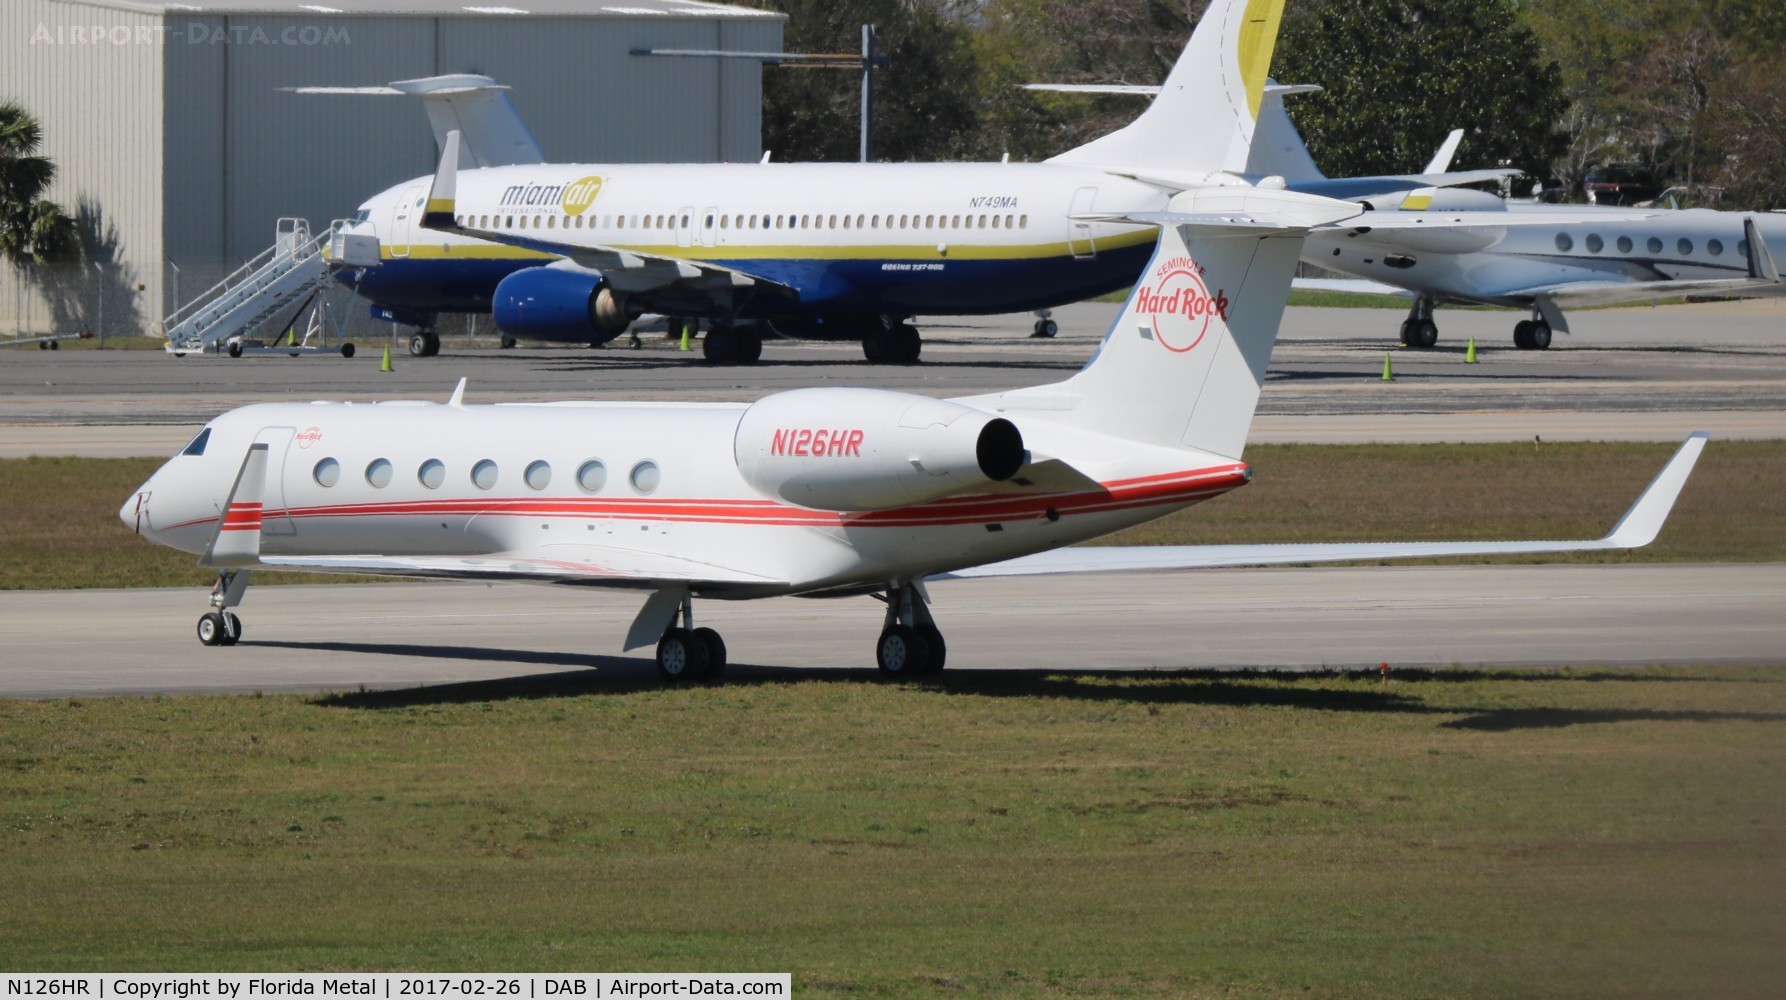 N126HR, 2013 Gulfstream Aerospace GV-SP (G550) C/N 5436, Seminole Hardrock